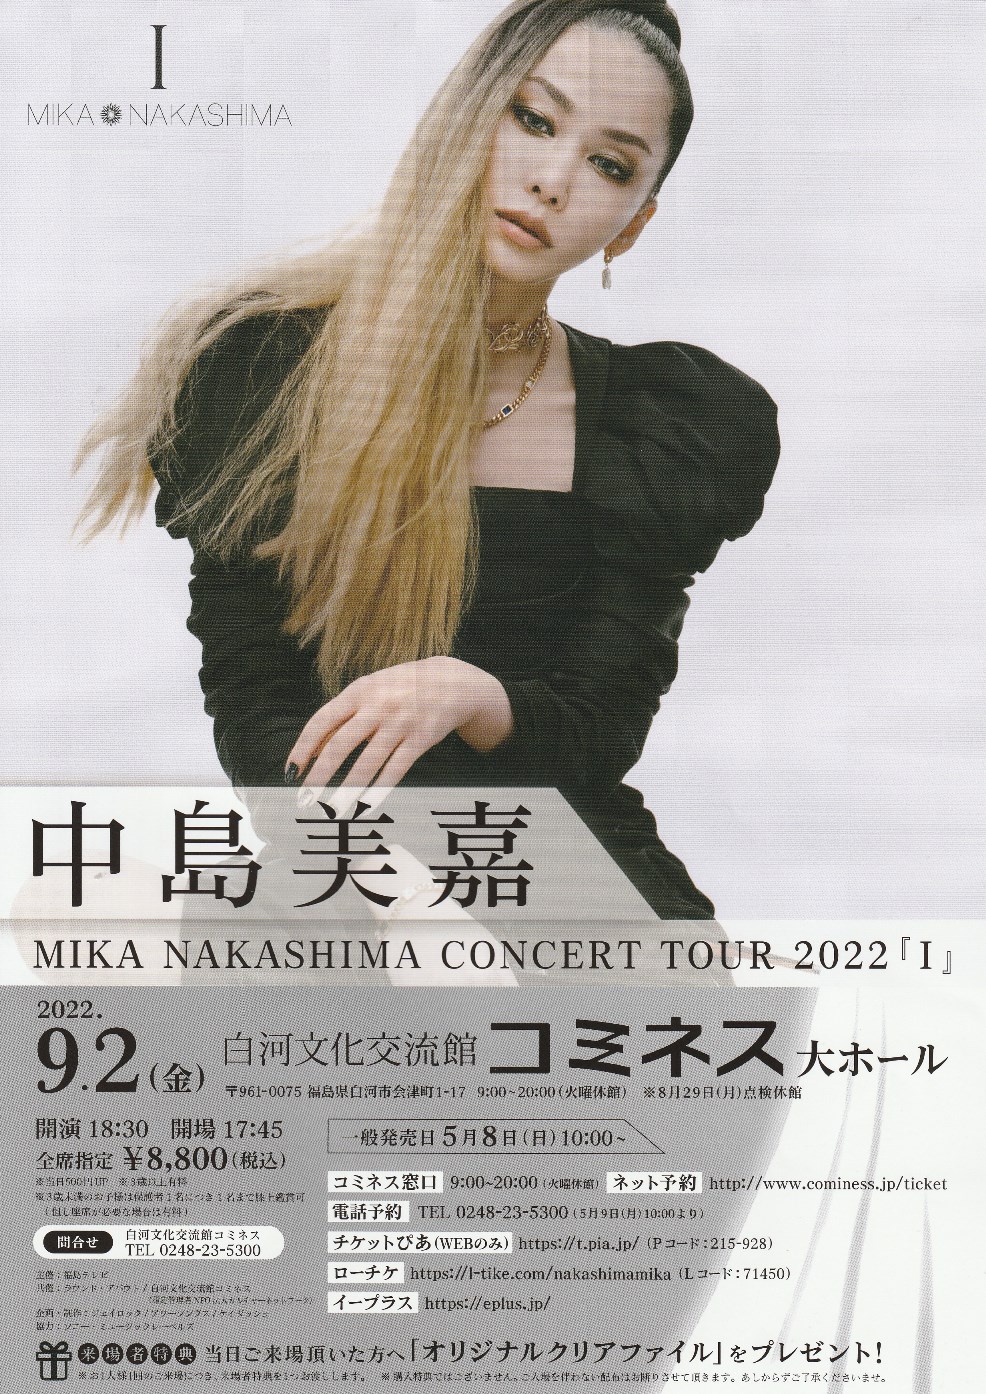 中島美嘉 MIKA NAKASHIMA CONCERT TOUR 2022『Ⅰ』 | イベントナビ